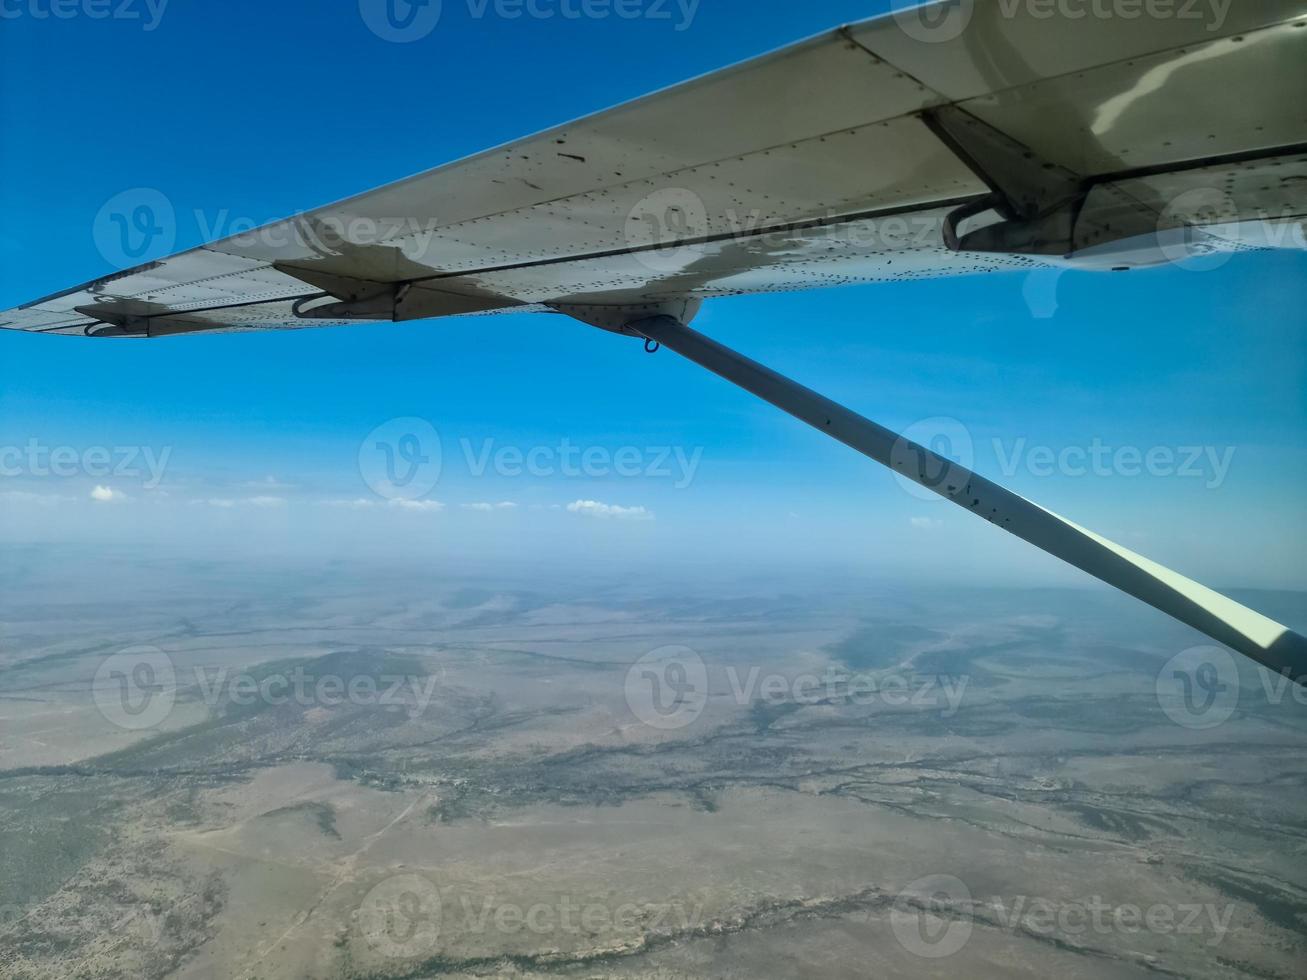 visie van een vliegtuig op de vleugel en de savanne in Kenia onderstaand. foto